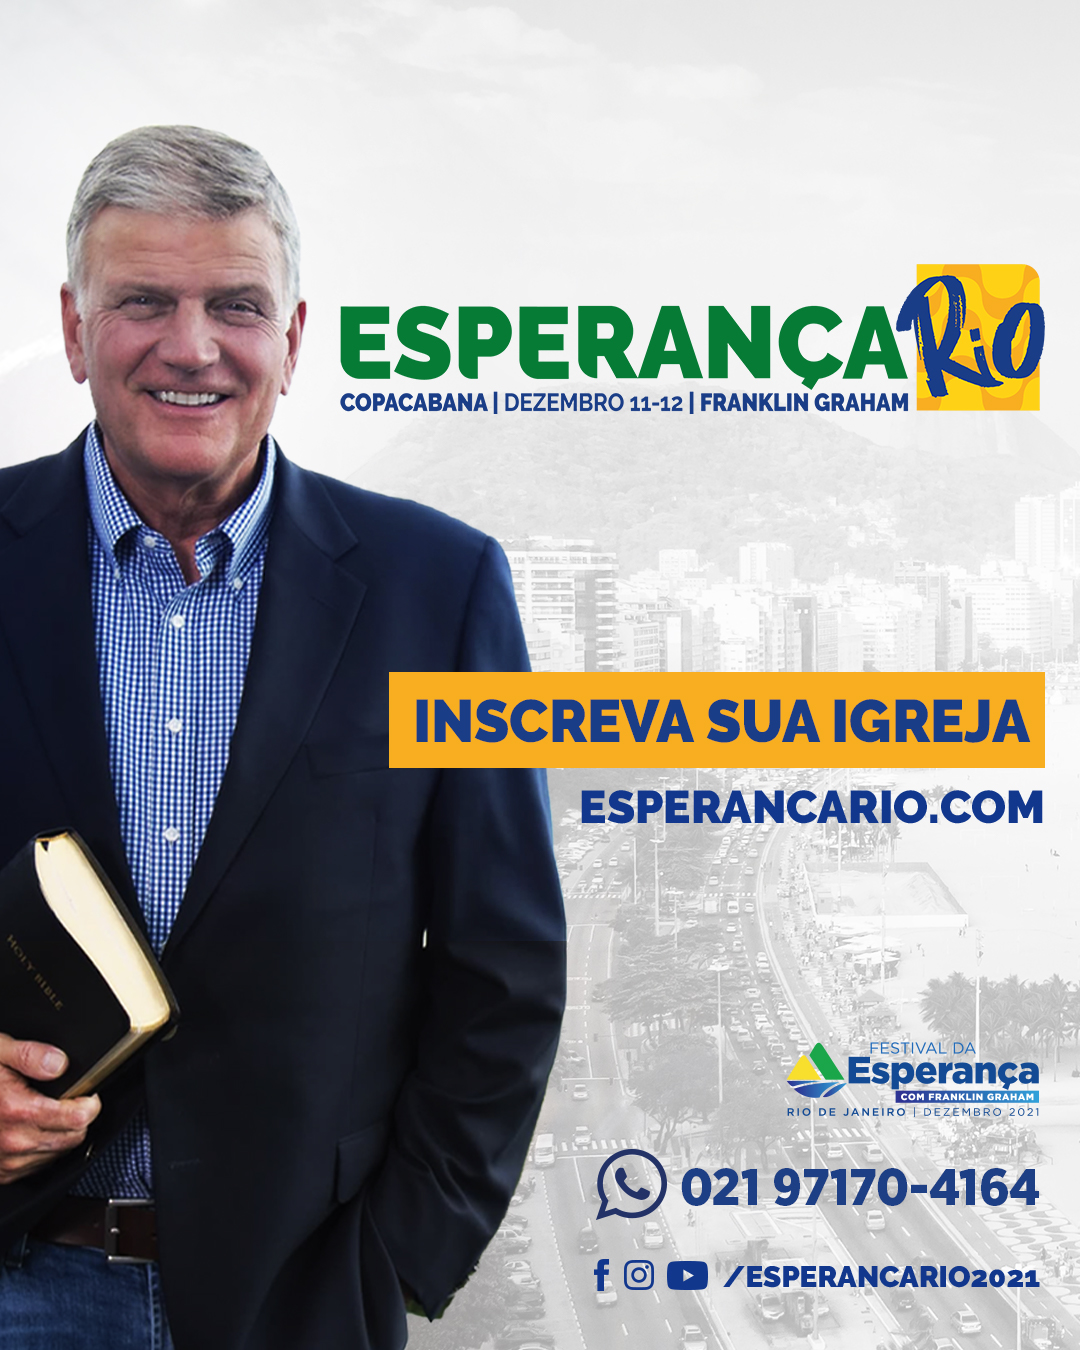 Rio de Janeiro recebe o evangelista Franklin Graham e sedia o Esperança Rio 2021